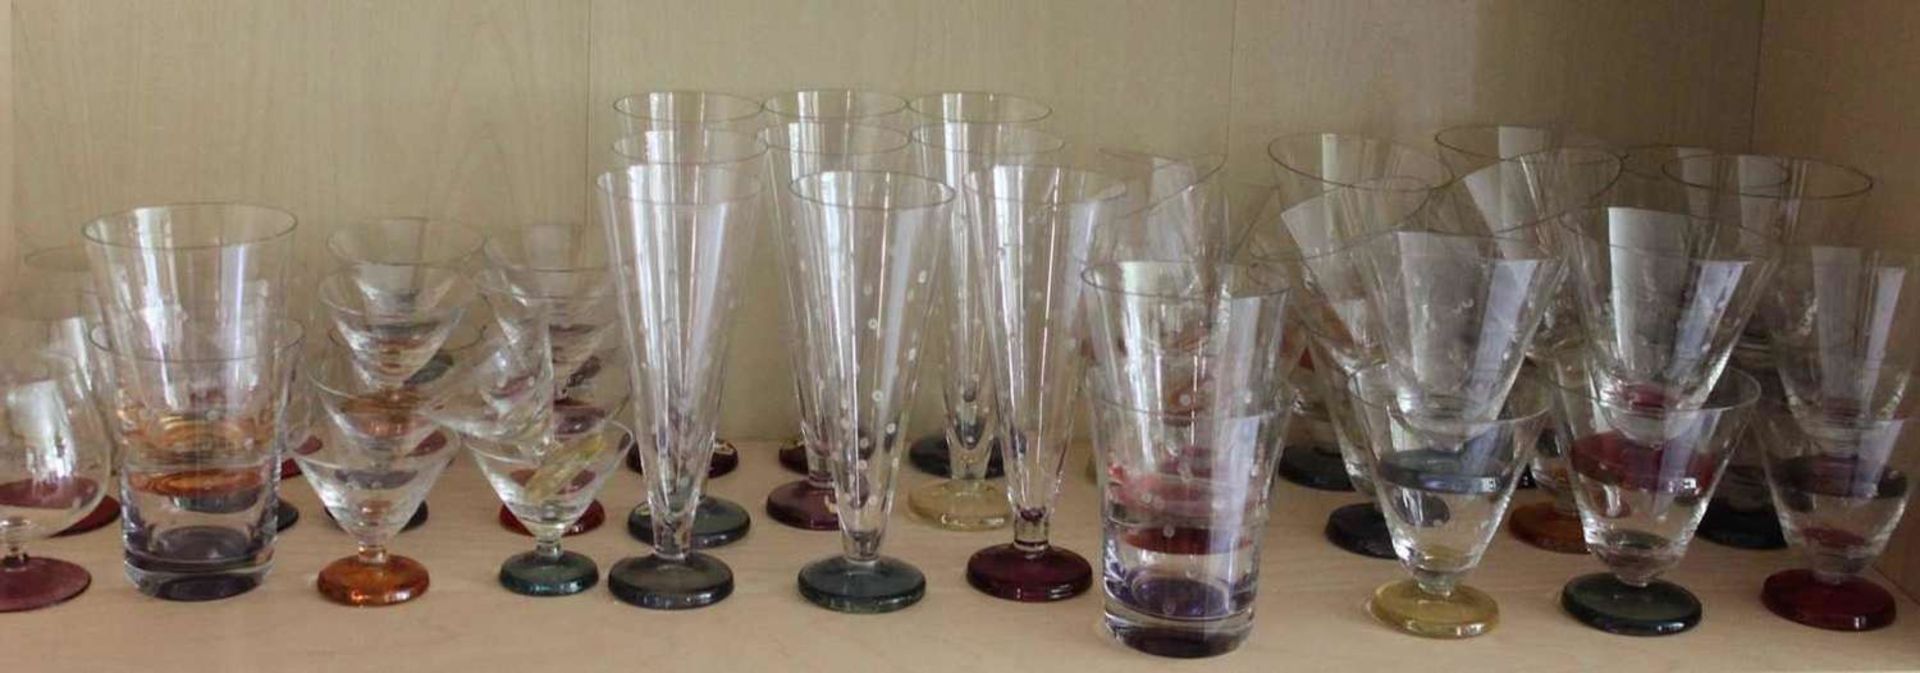 Gläserkonvolut aus 1 Glasserie, alle mit verschieden farbigen Böden und Tupfen, bestehend aus 5